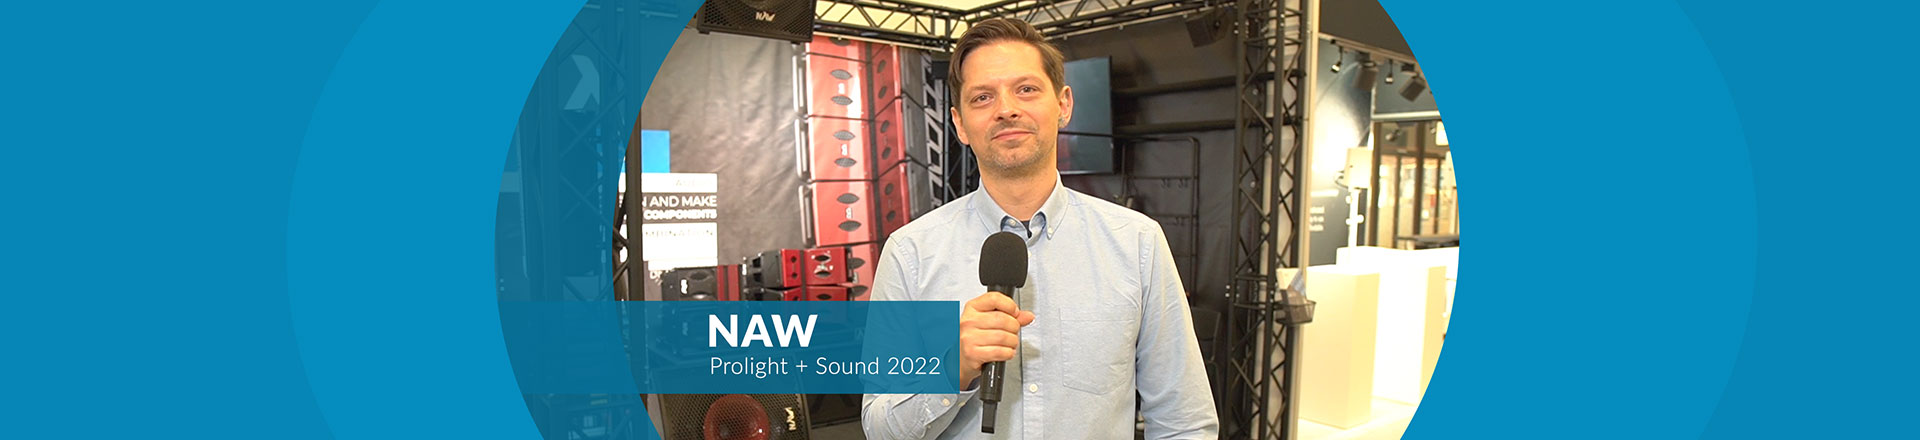 Nagłośnienie NAW Performance Audio na targach Prolight+Sound 2022